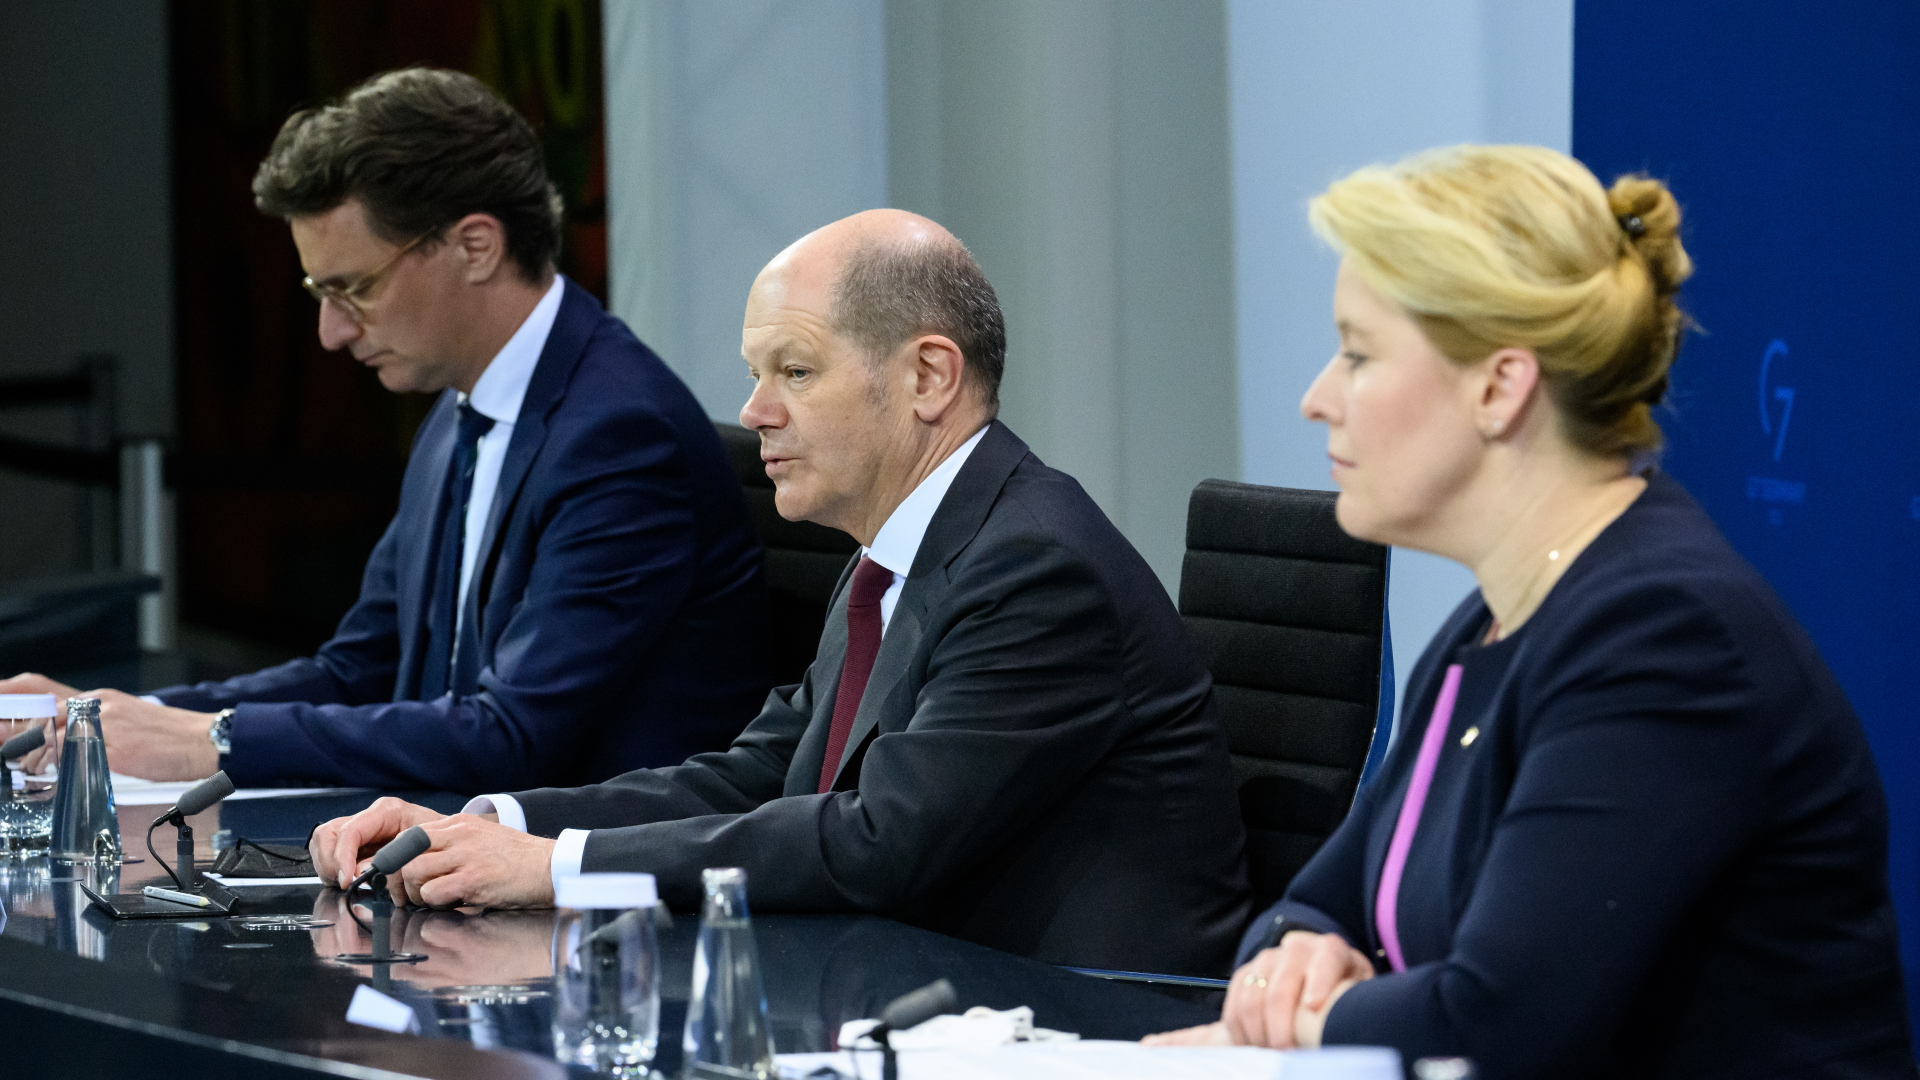 Dietmar Woidke, Olaf Scholz und Manuela Schwesig bei der Pressekonferenz nach den Gesprächen | dpa